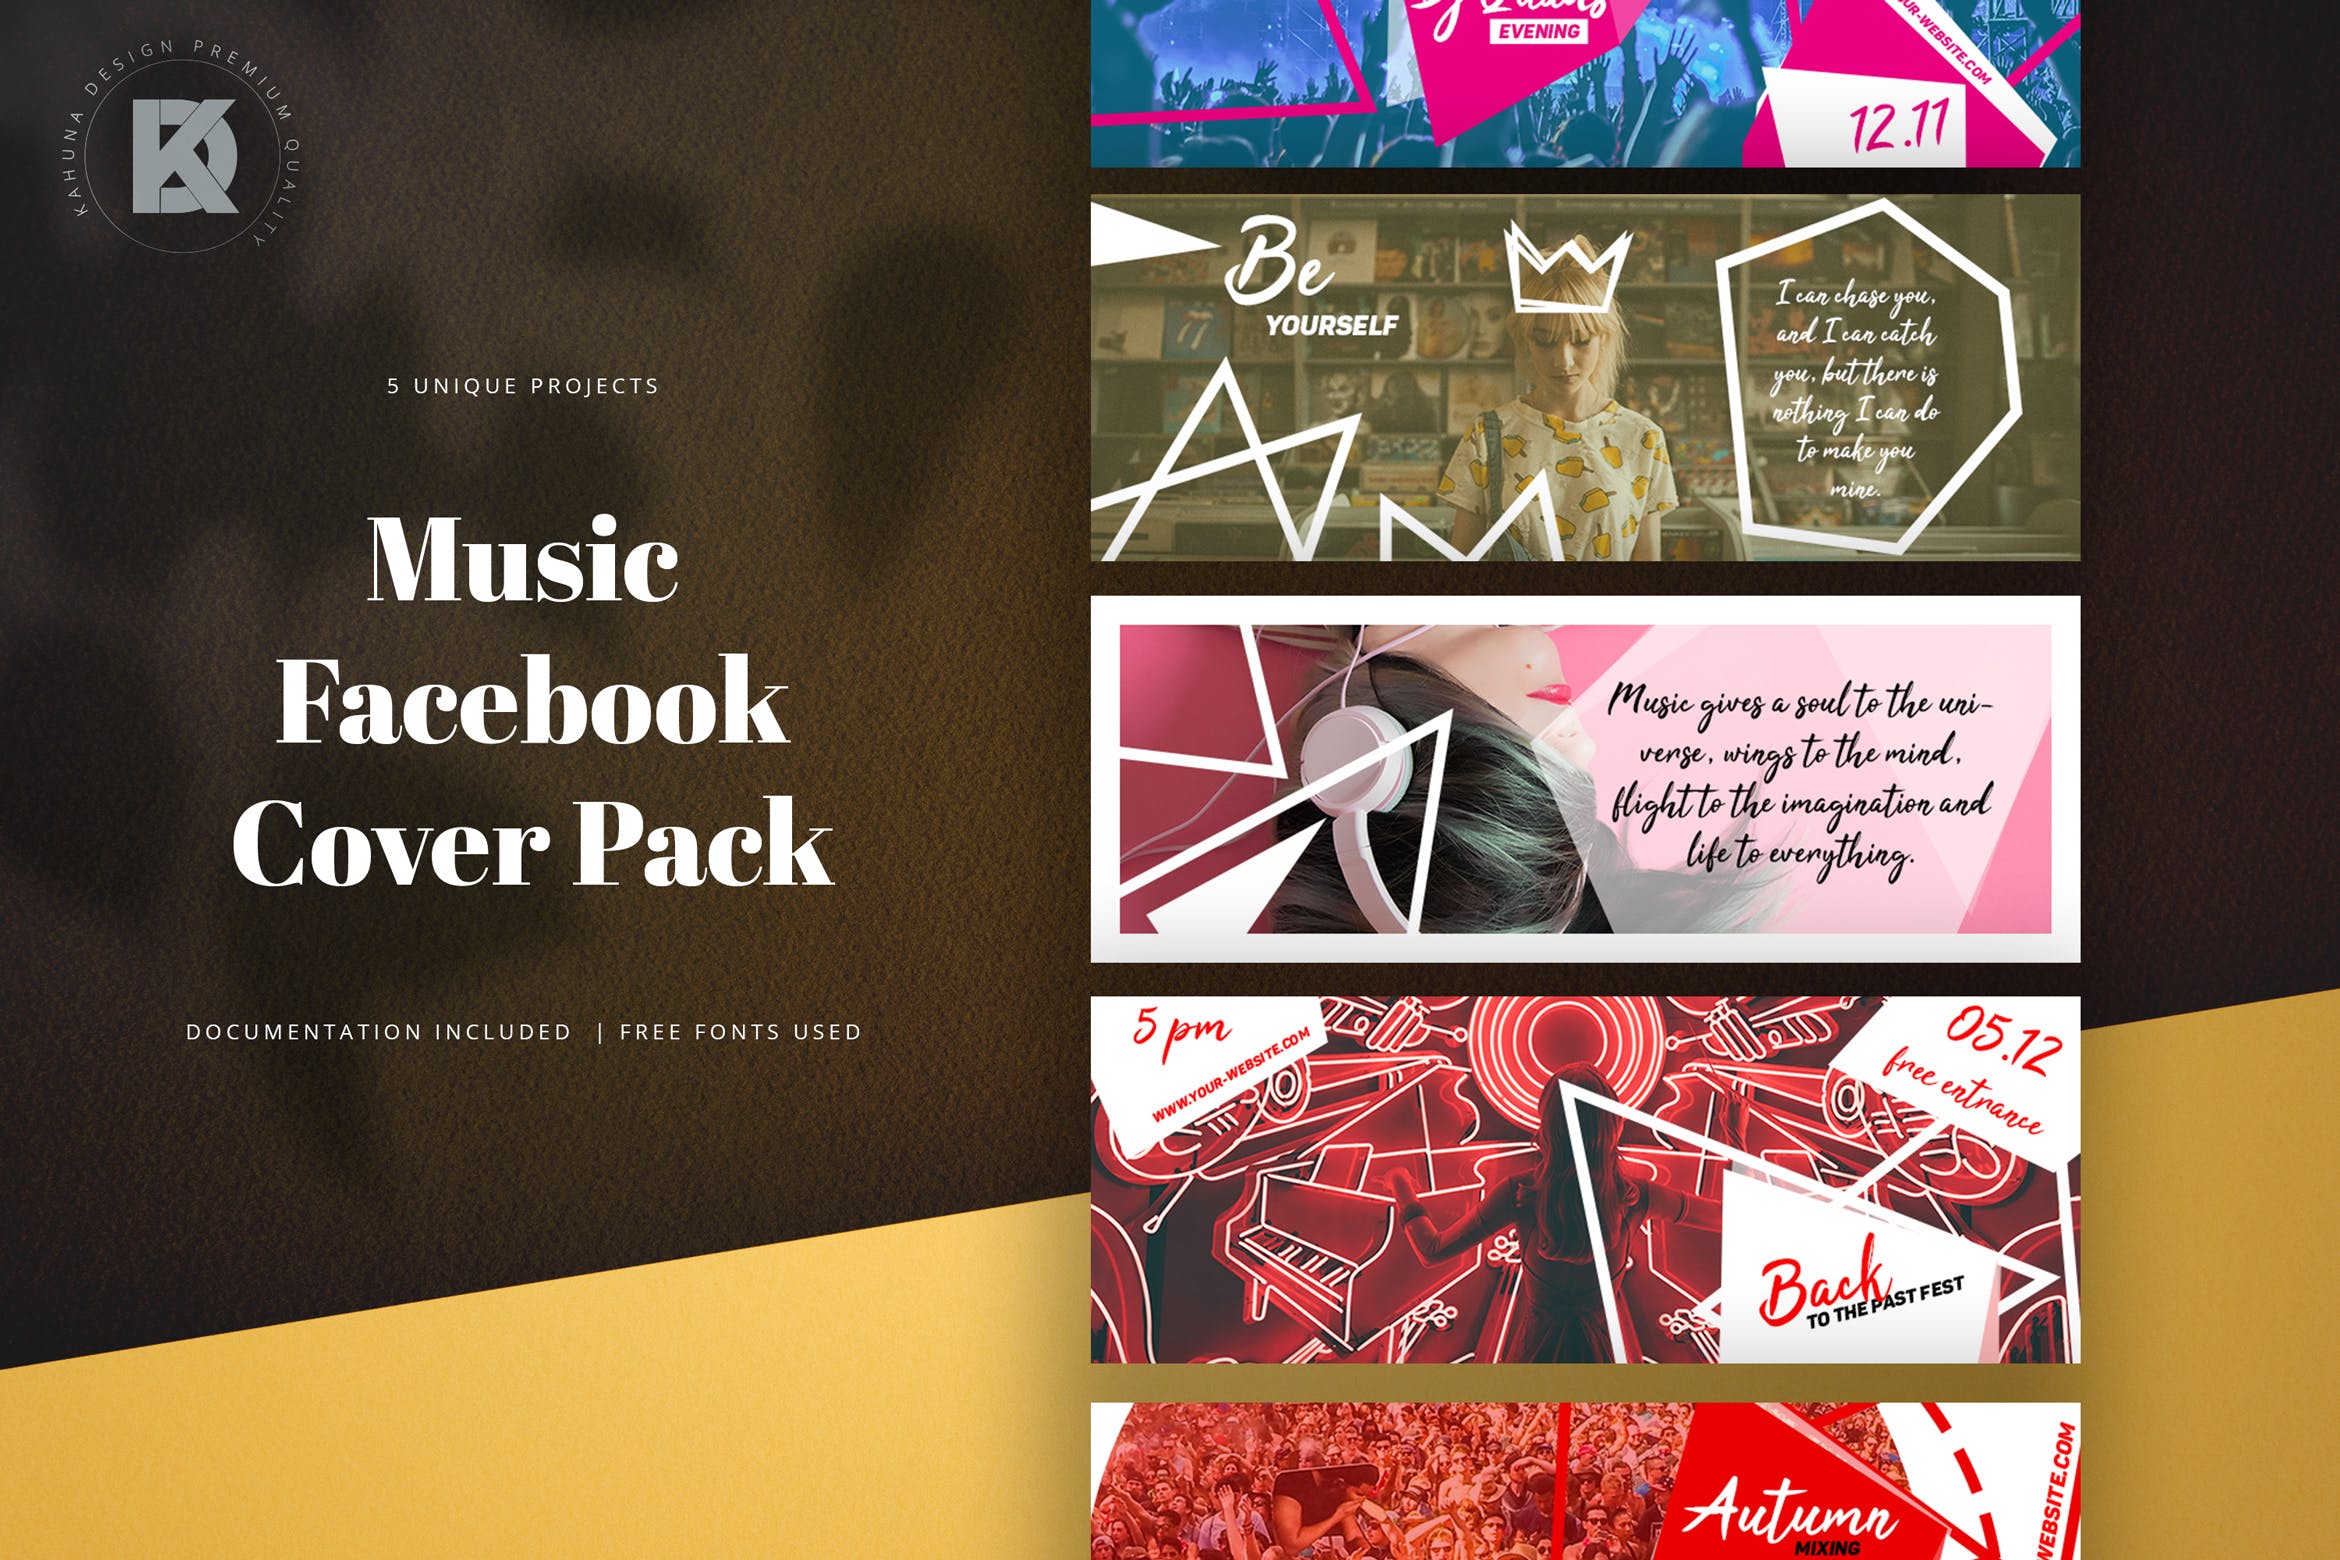 音乐节/音乐演出活动Facebook主页封面设计模板第一素材精选 Music Facebook Cover Pack插图